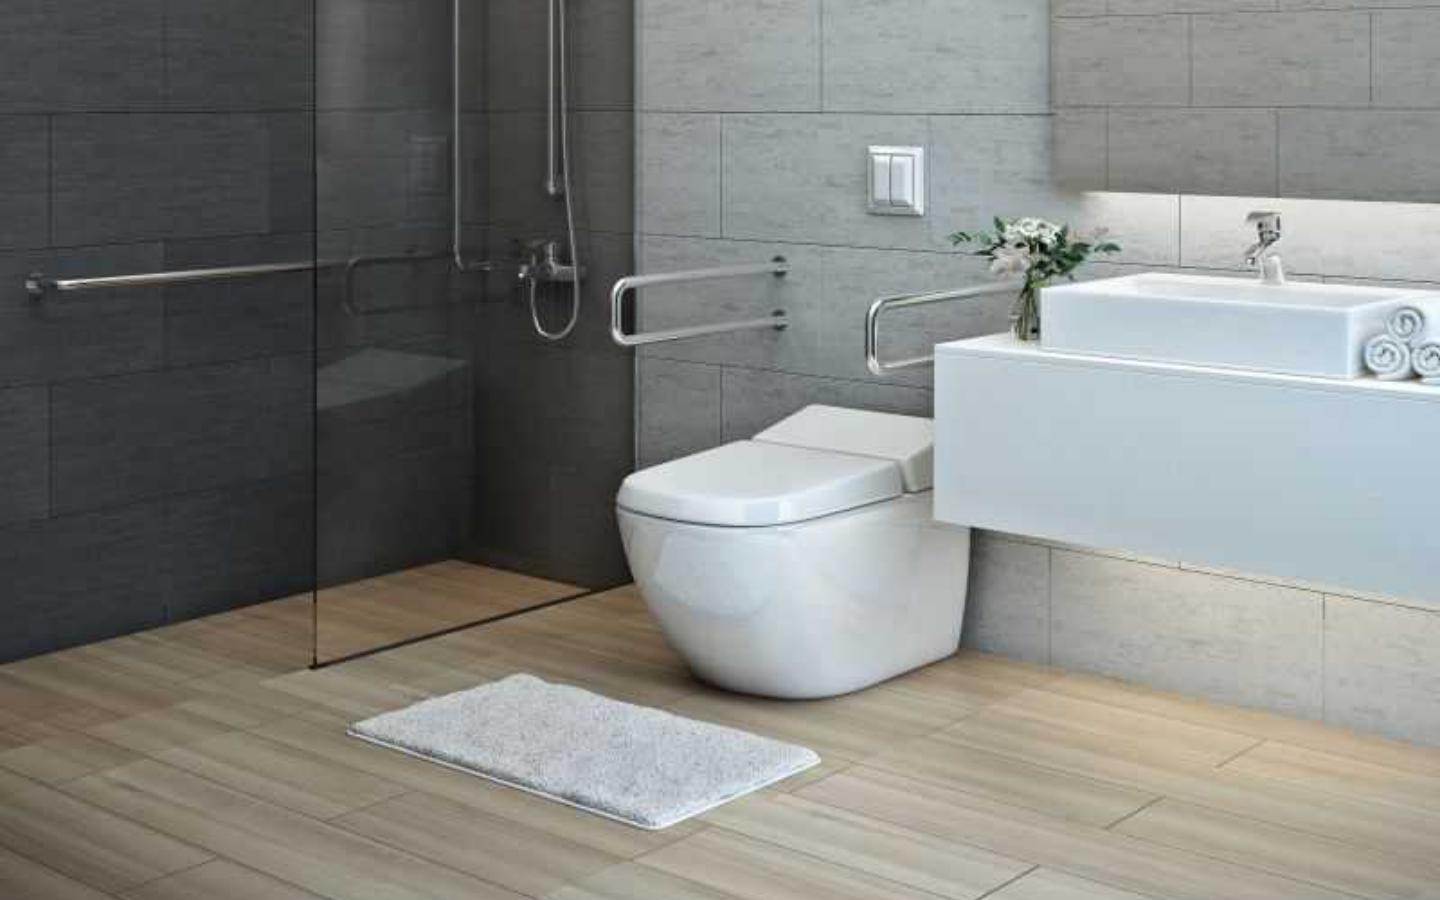  wheelchair-accessible bathroom vanities